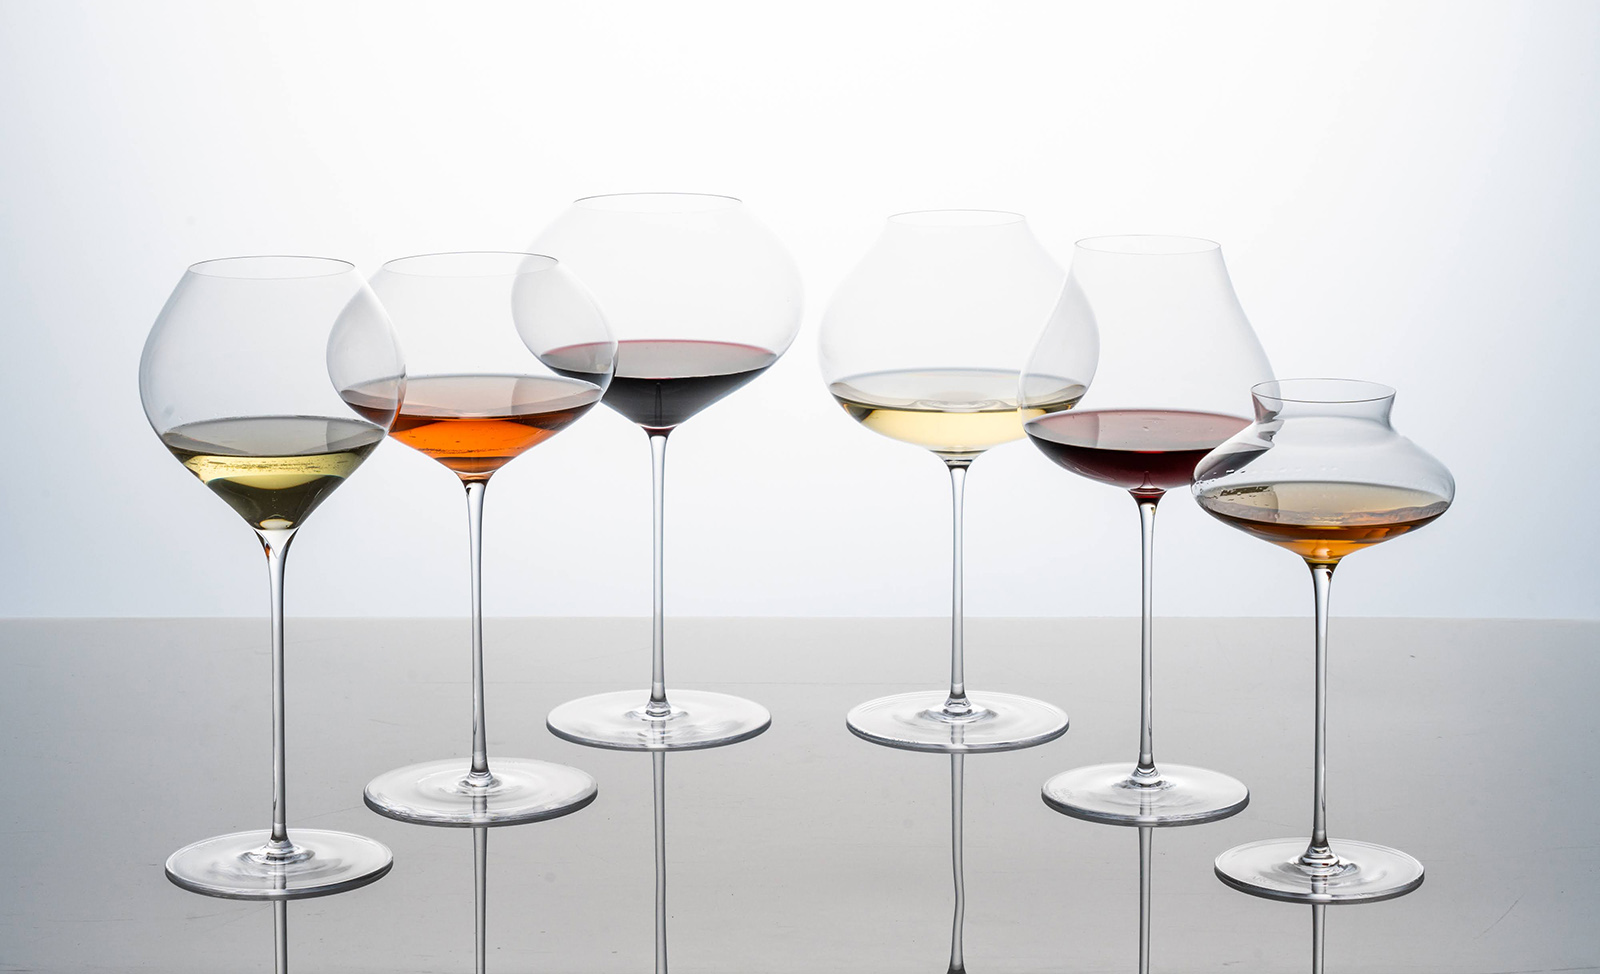 3つ星レストラン御用達、イタリア発「対流構造」で香りを引き出すワイングラスが期間限定販売 イメージ画像